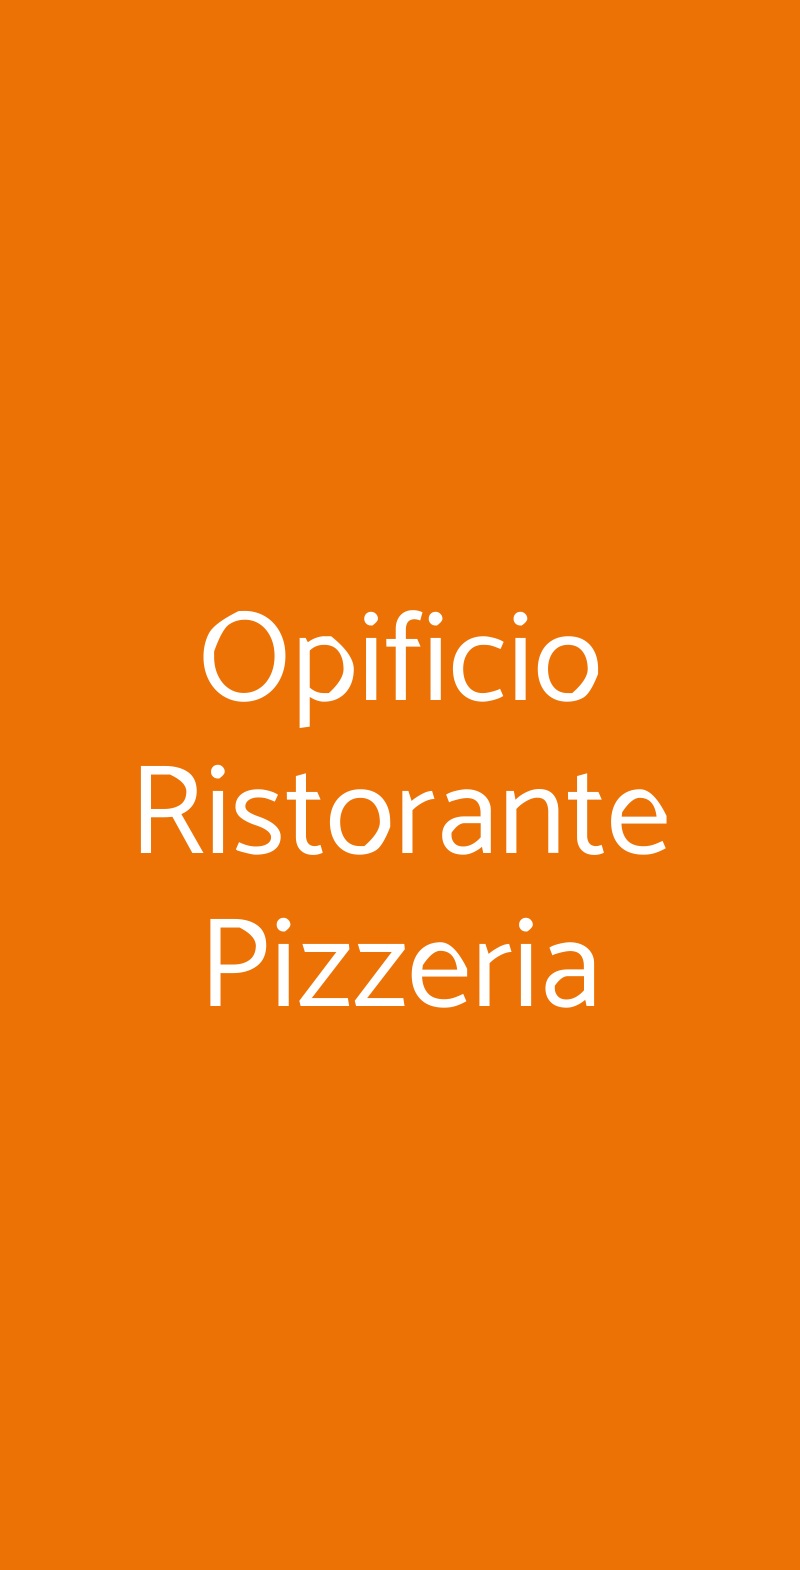 Opificio Ristorante Pizzeria Rivoli menù 1 pagina